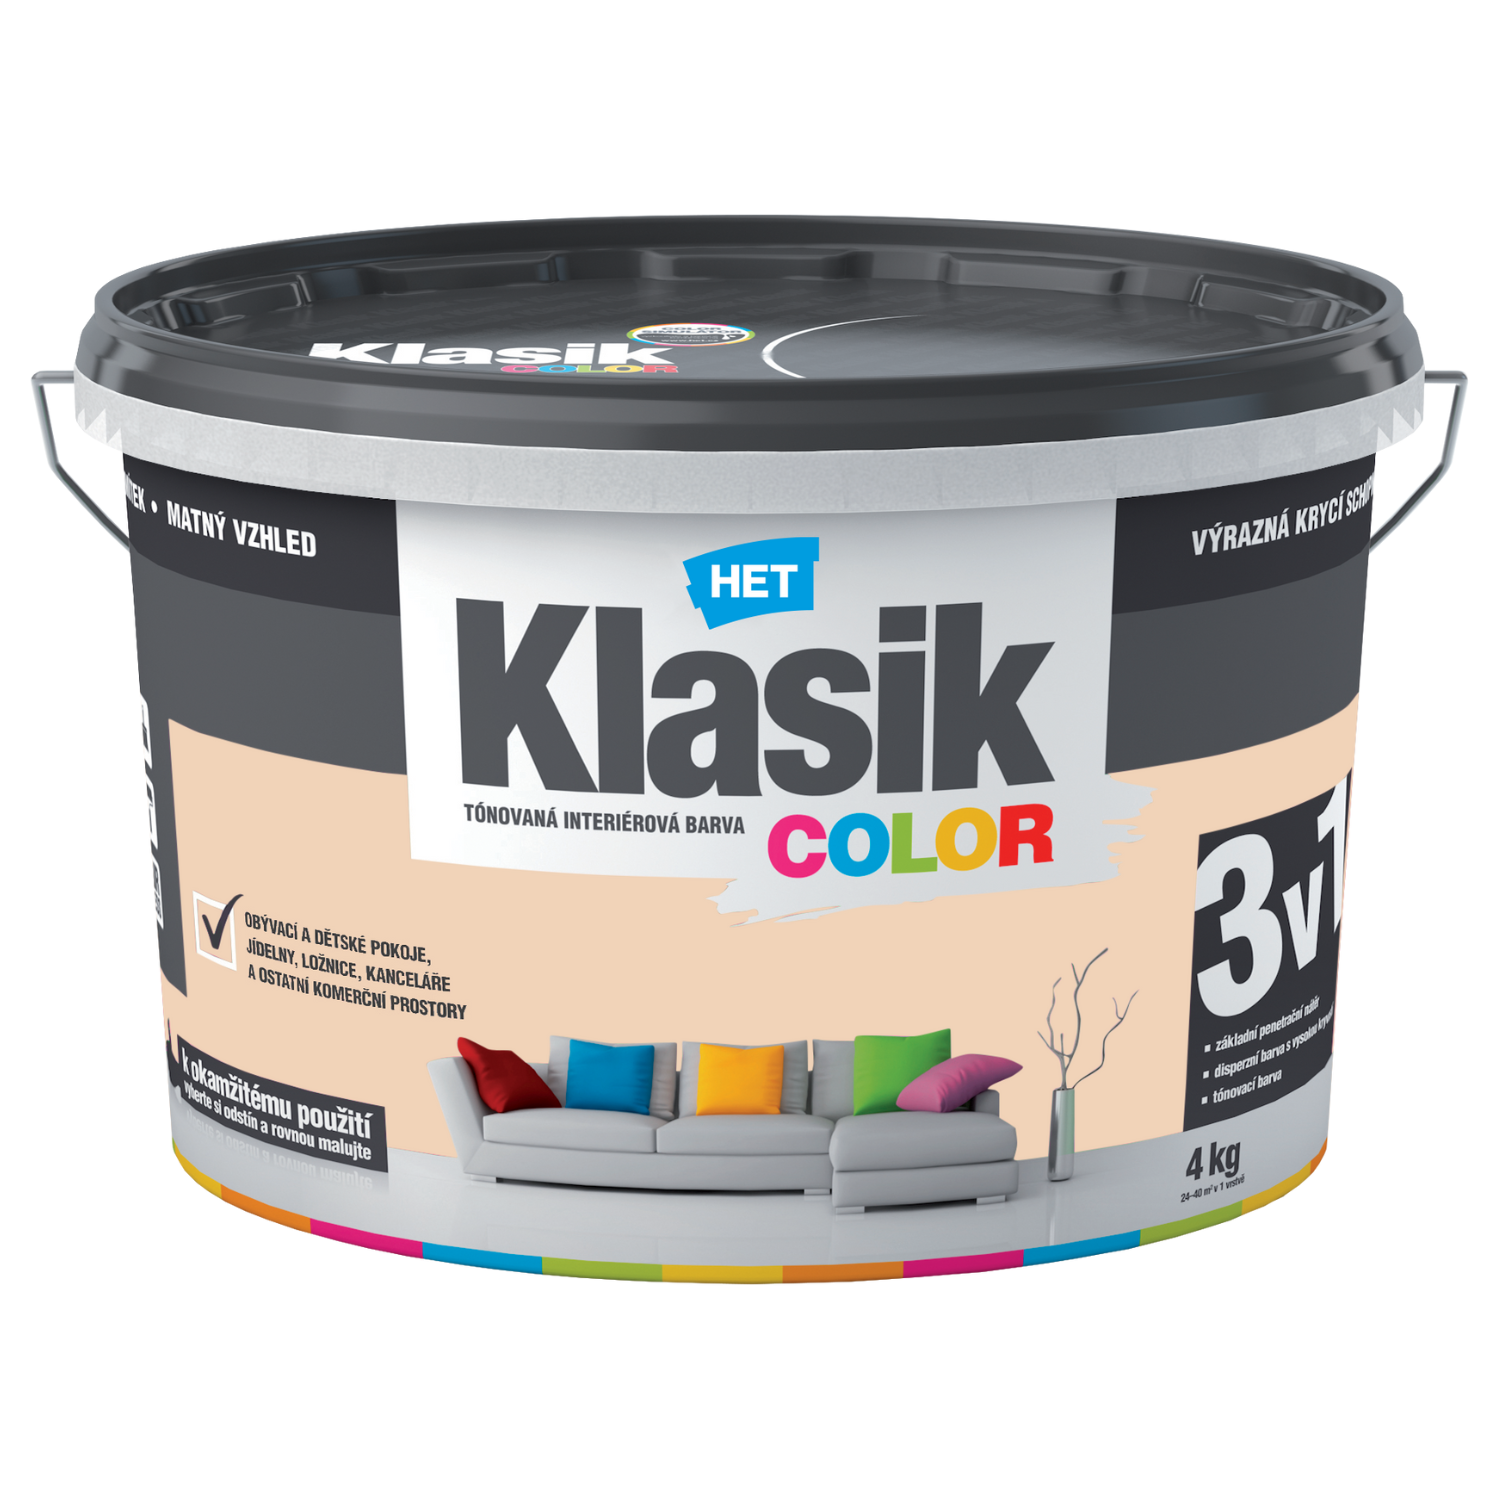 HET Klasik COLOR tónovaná interiérová akrylátová disperzná oteruvzdorná farba 4 kg, KC0667 - žltý vanilkový